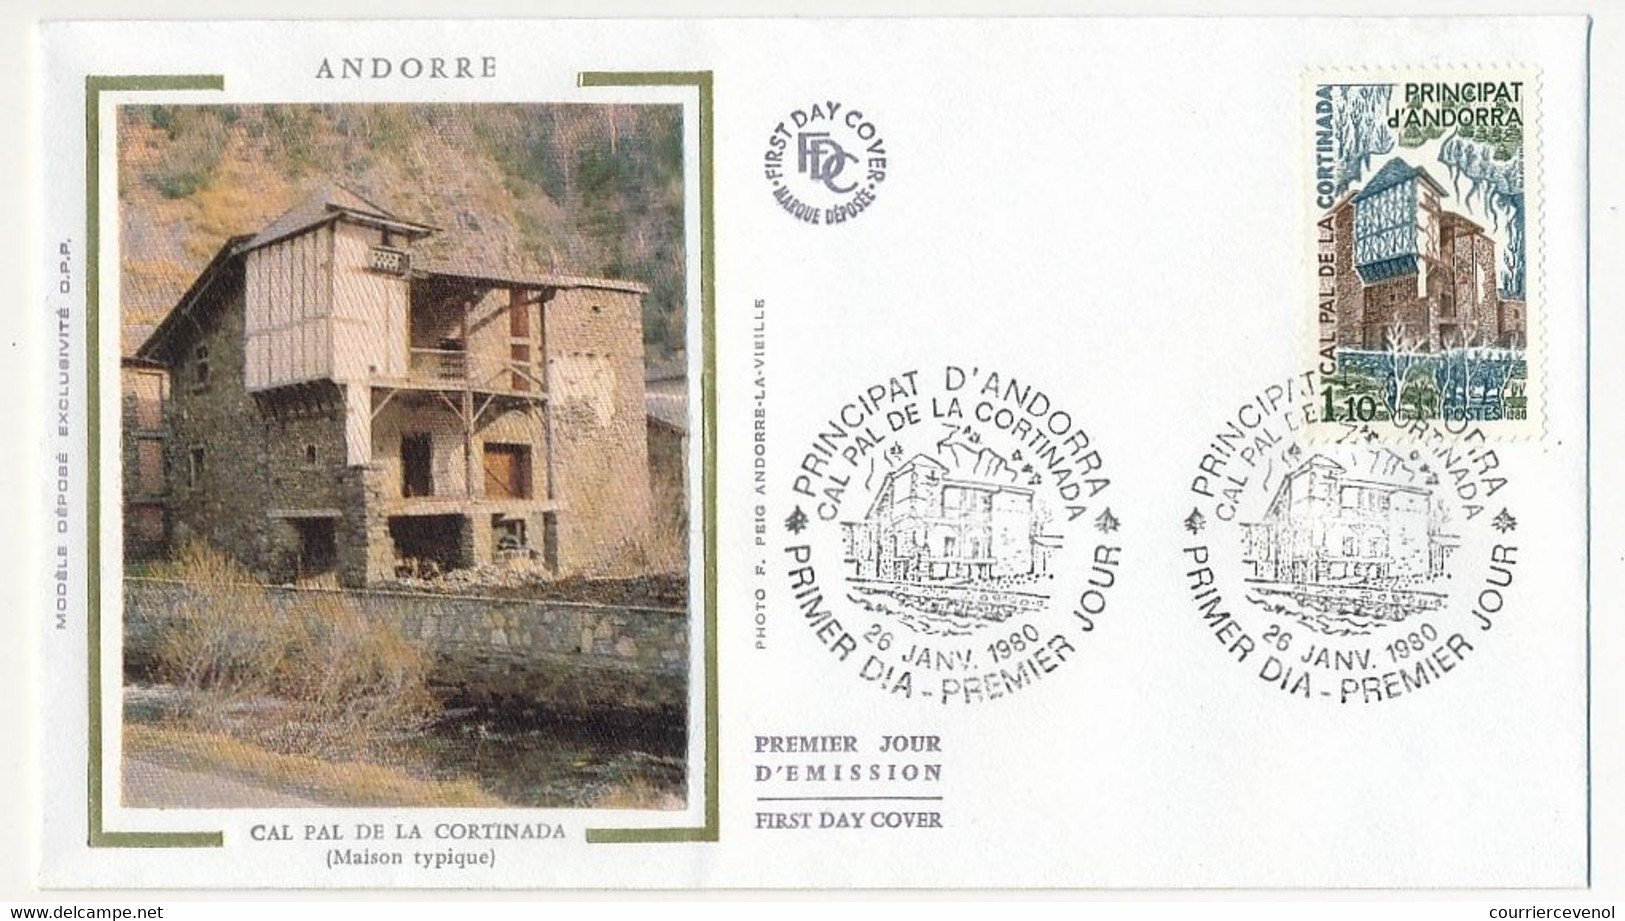 ANDORRE - Enveloppe FDC Soie =>  1,10 F Cal Pal De La Cortina - 26 Janvier 1980 - Principat D'Andorra - FDC